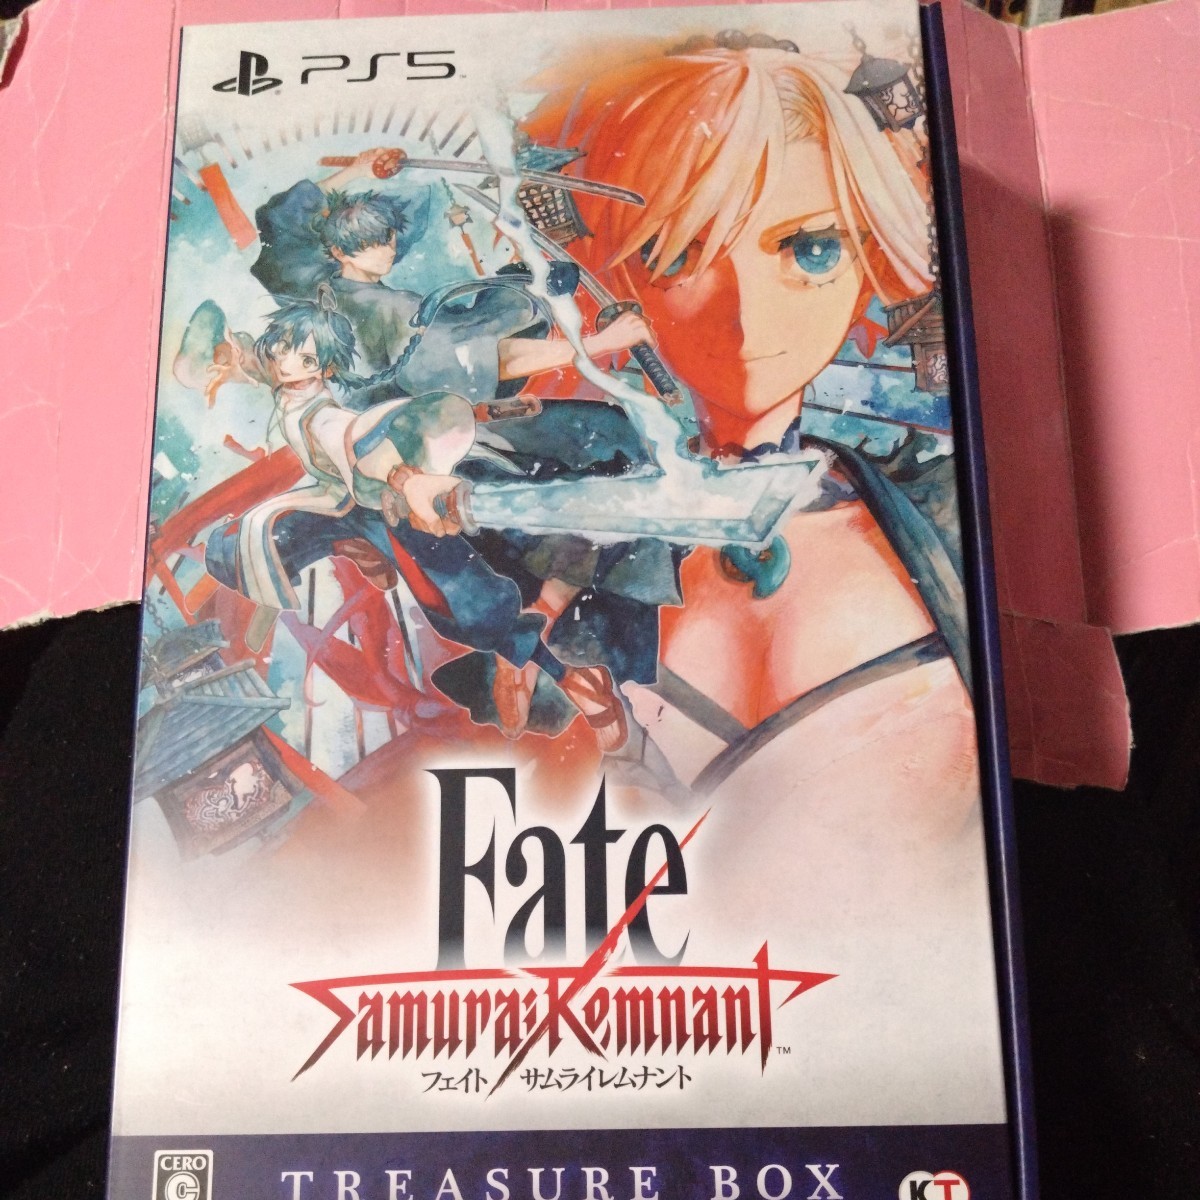 【PS5】 Fate/Samurai Remnant [TREASURE BOX]　フェイトサムライレムナント